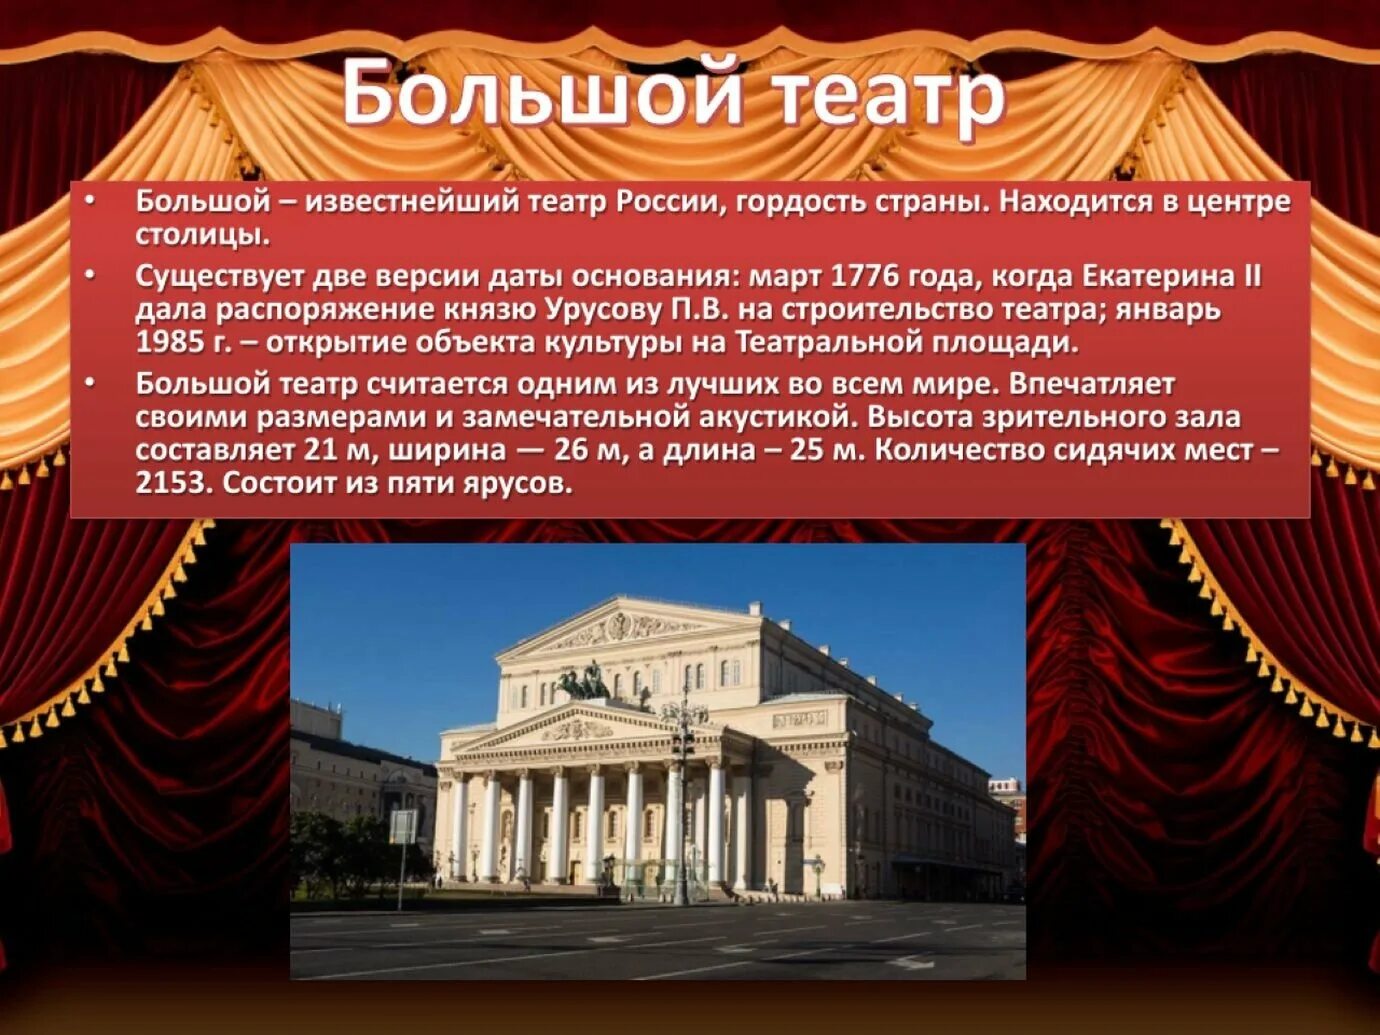 1776 В Москве основан большой театр. Большой Московский театр 1776 год. Большой - известнейший театр России,. Театр презентация.